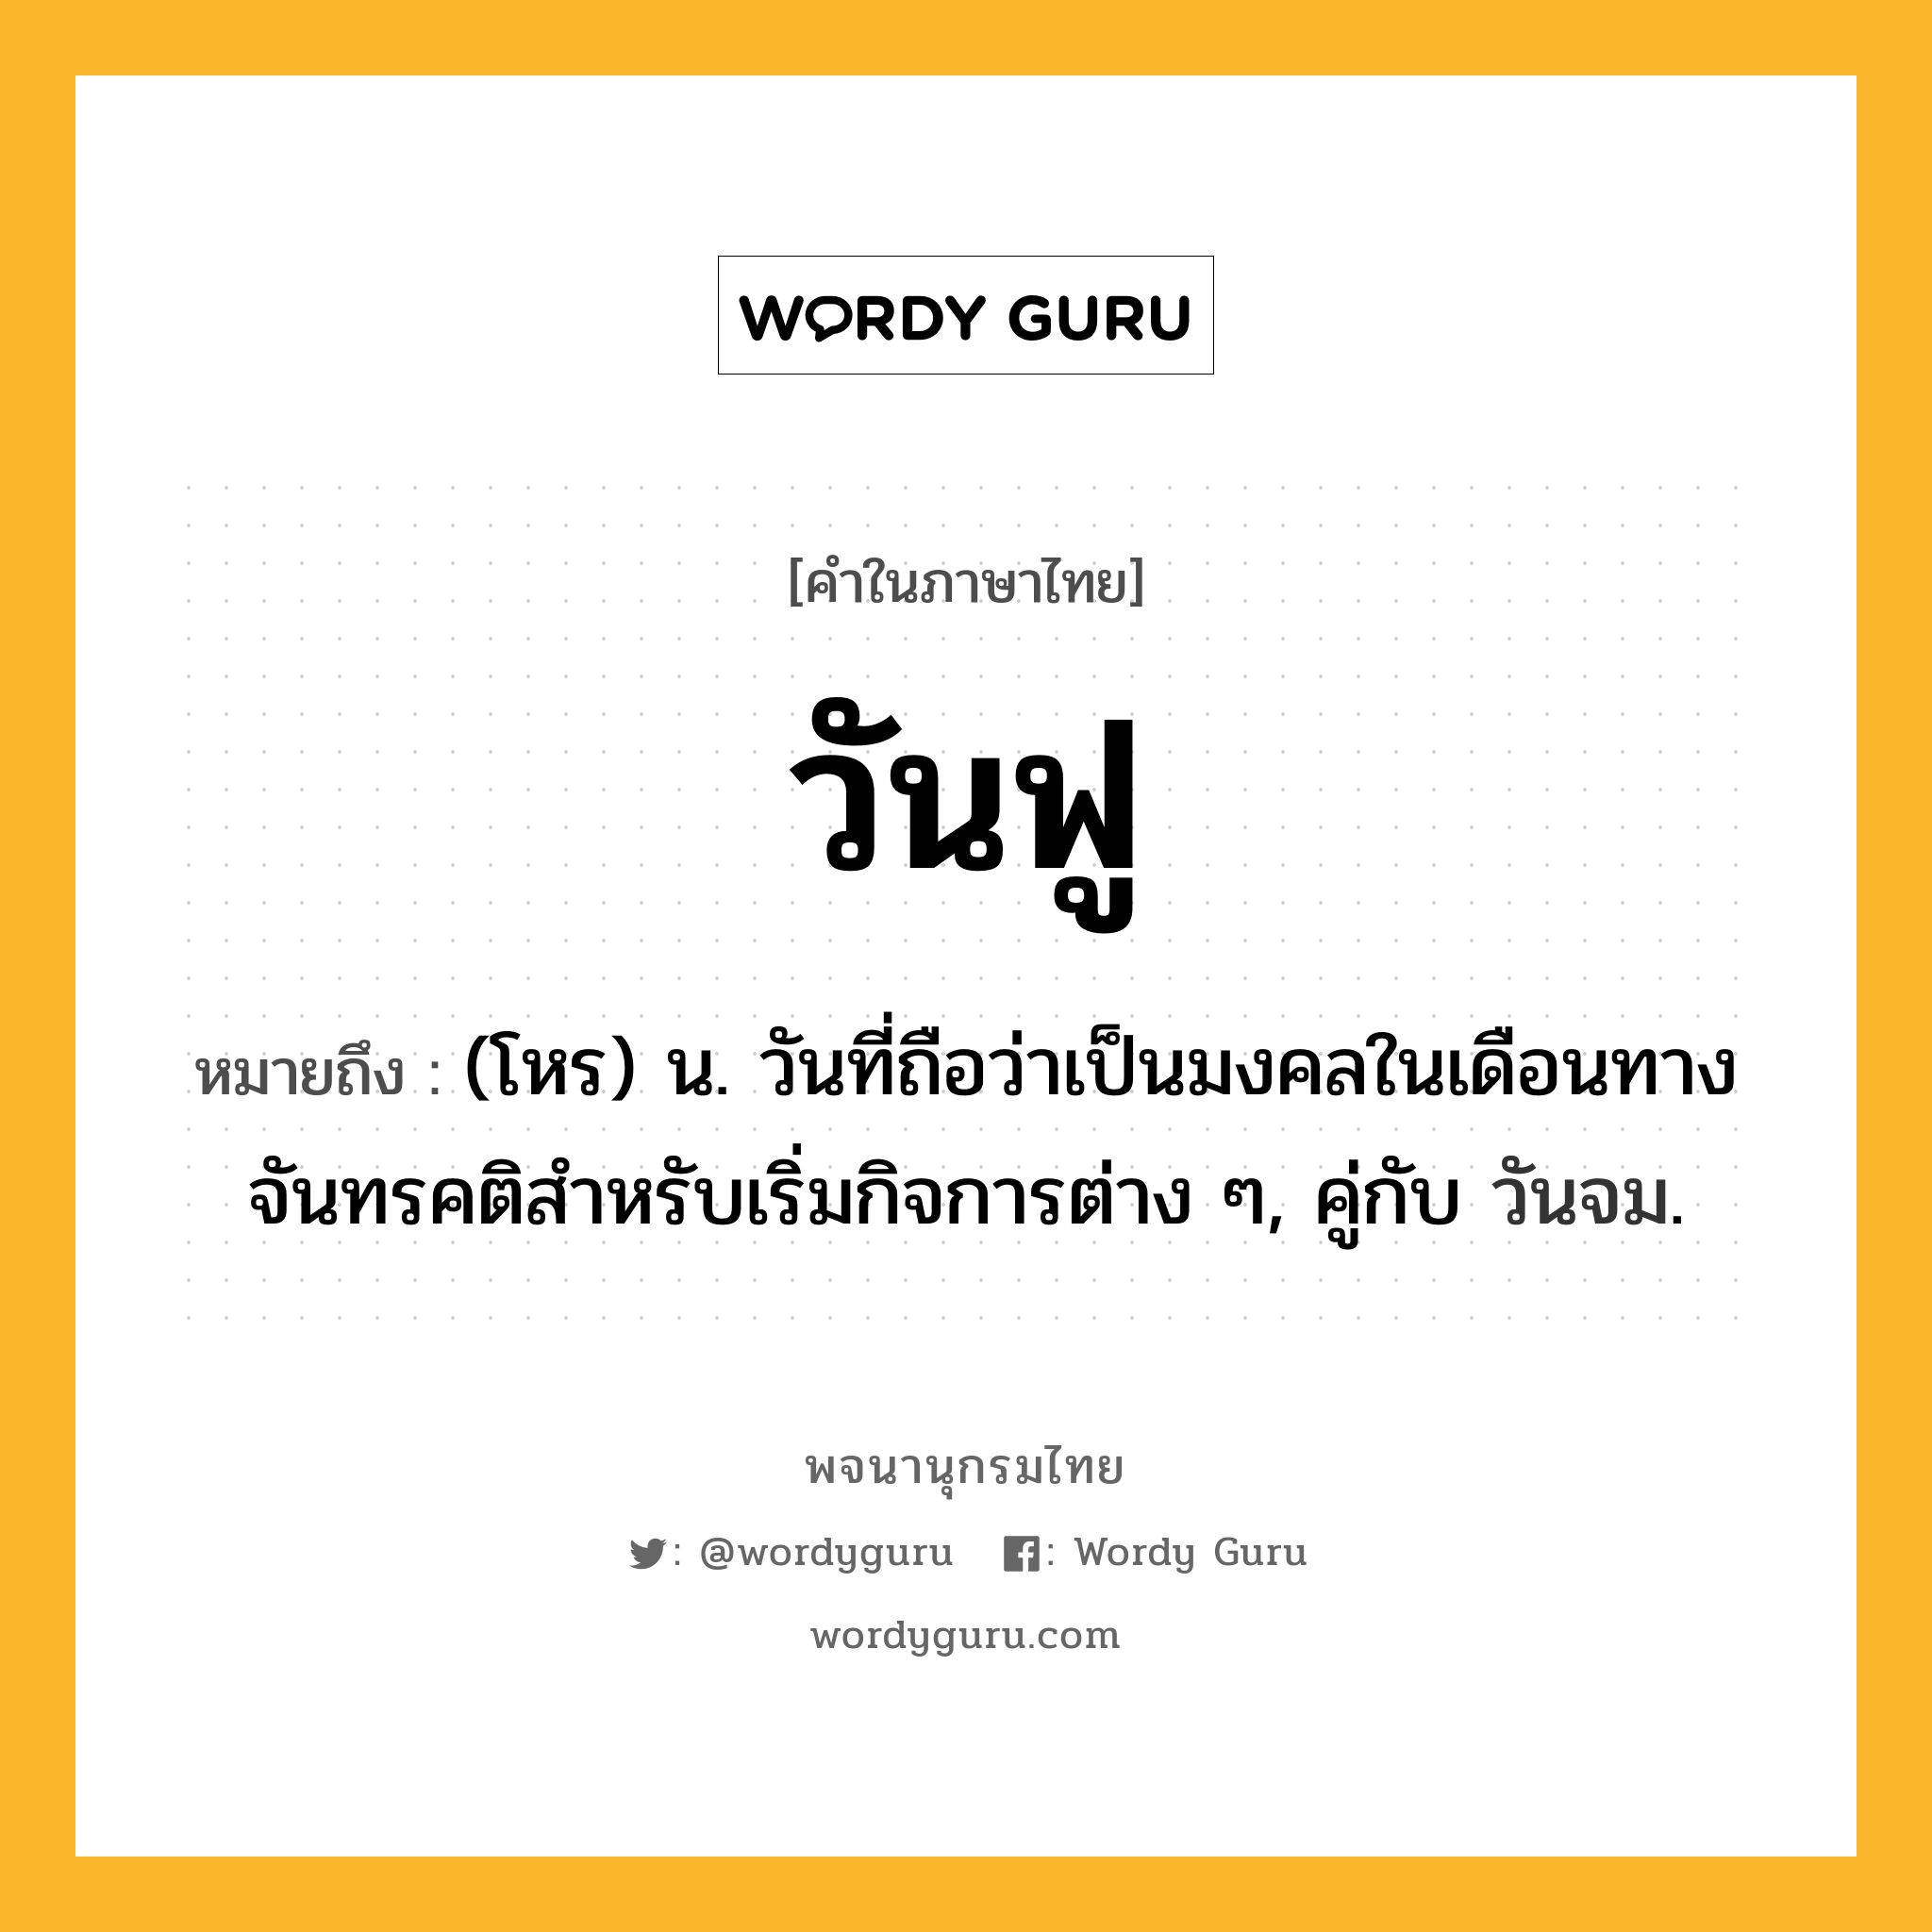 วันฟู หมายถึงอะไร?, คำในภาษาไทย วันฟู หมายถึง (โหร) น. วันที่ถือว่าเป็นมงคลในเดือนทางจันทรคติสําหรับเริ่มกิจการต่าง ๆ, คู่กับ วันจม.